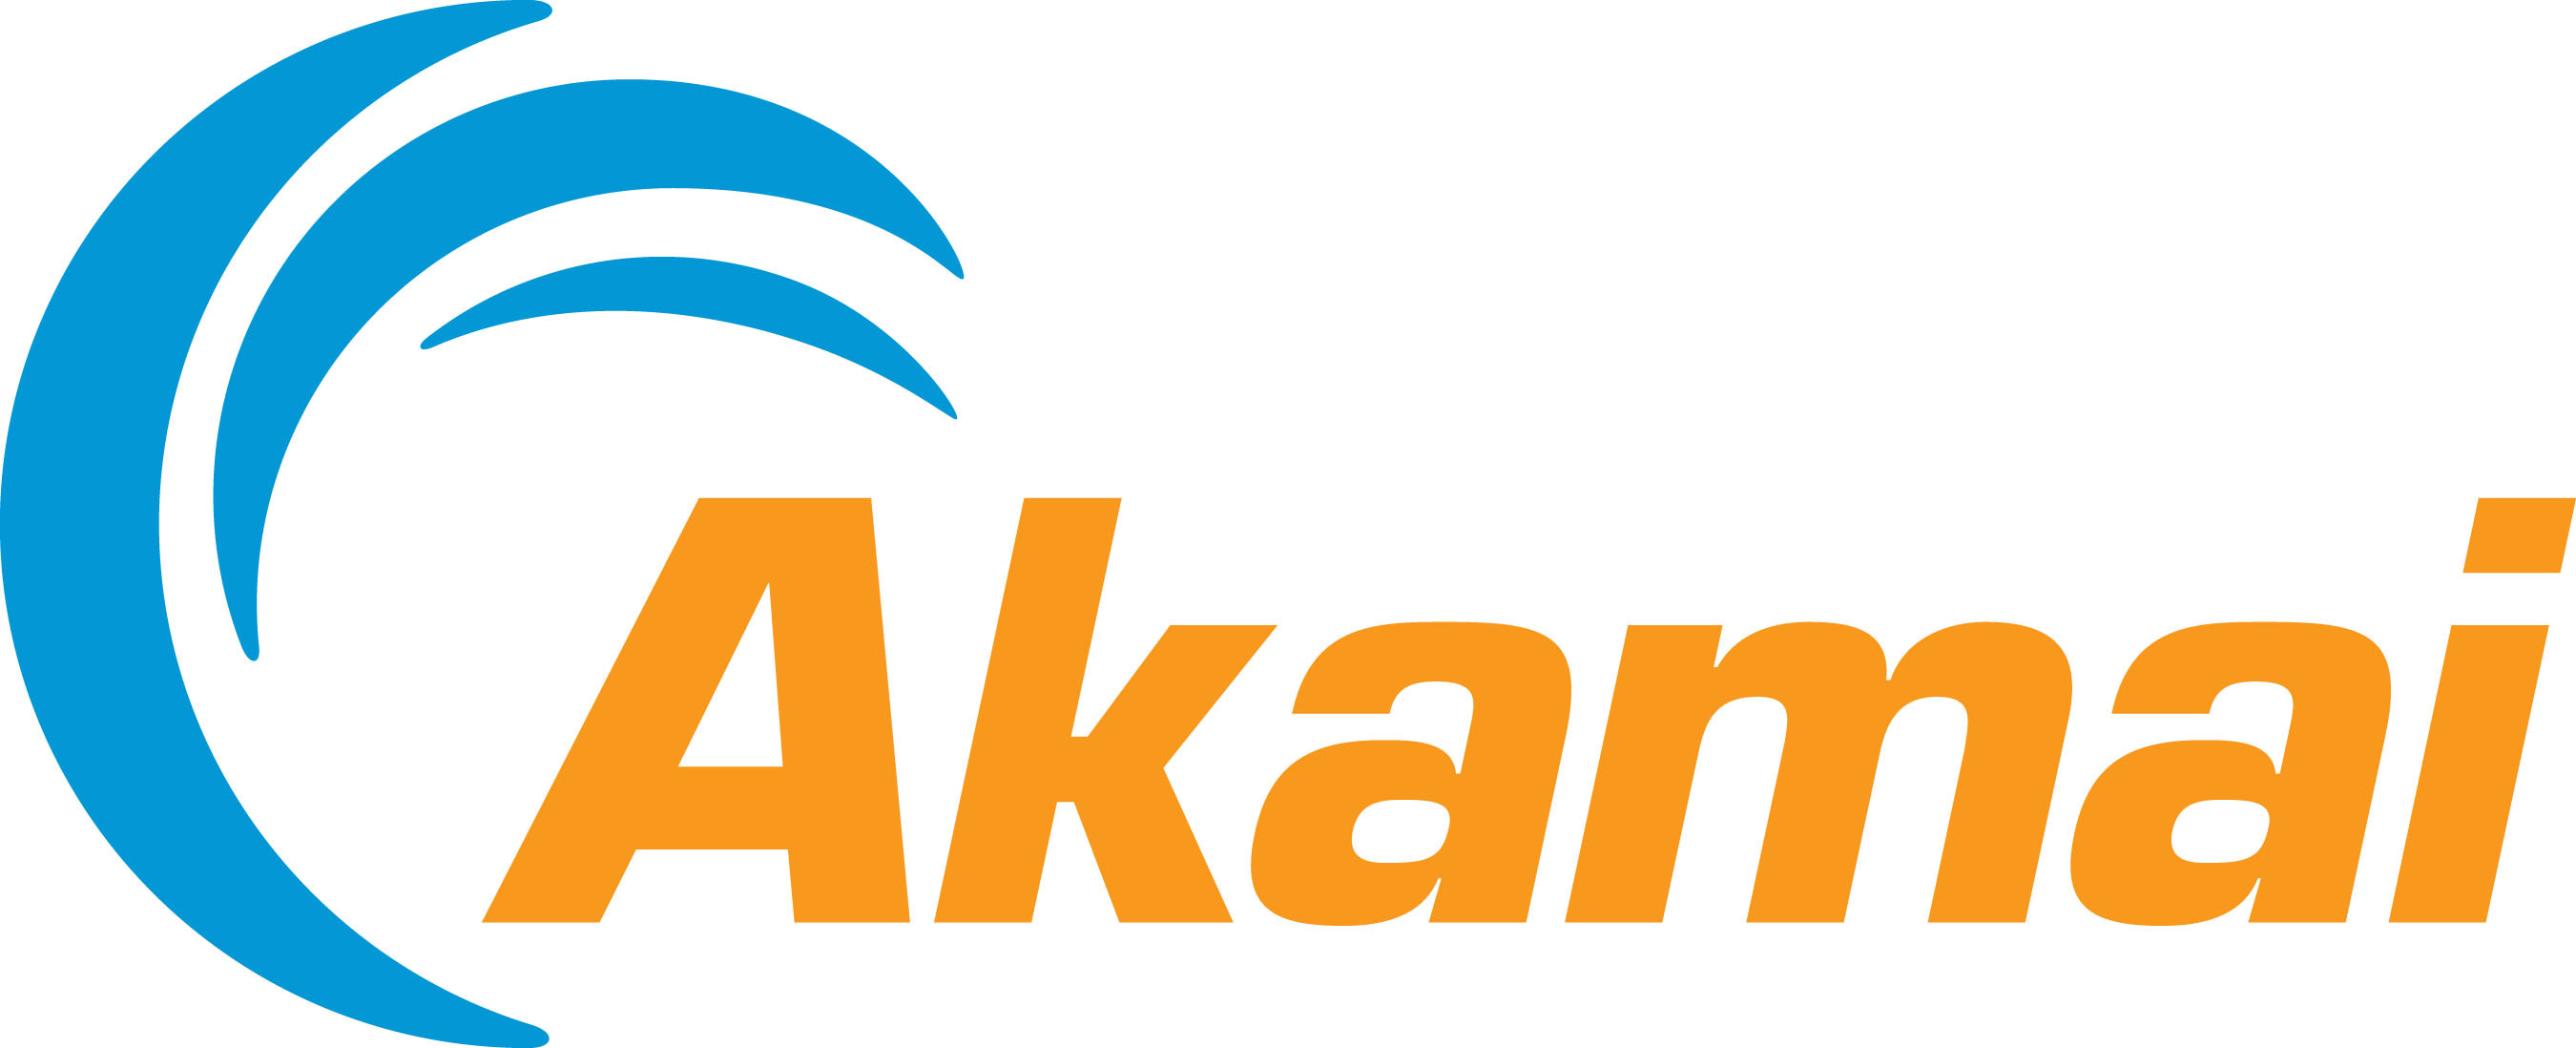 Akamai Technologies logo.